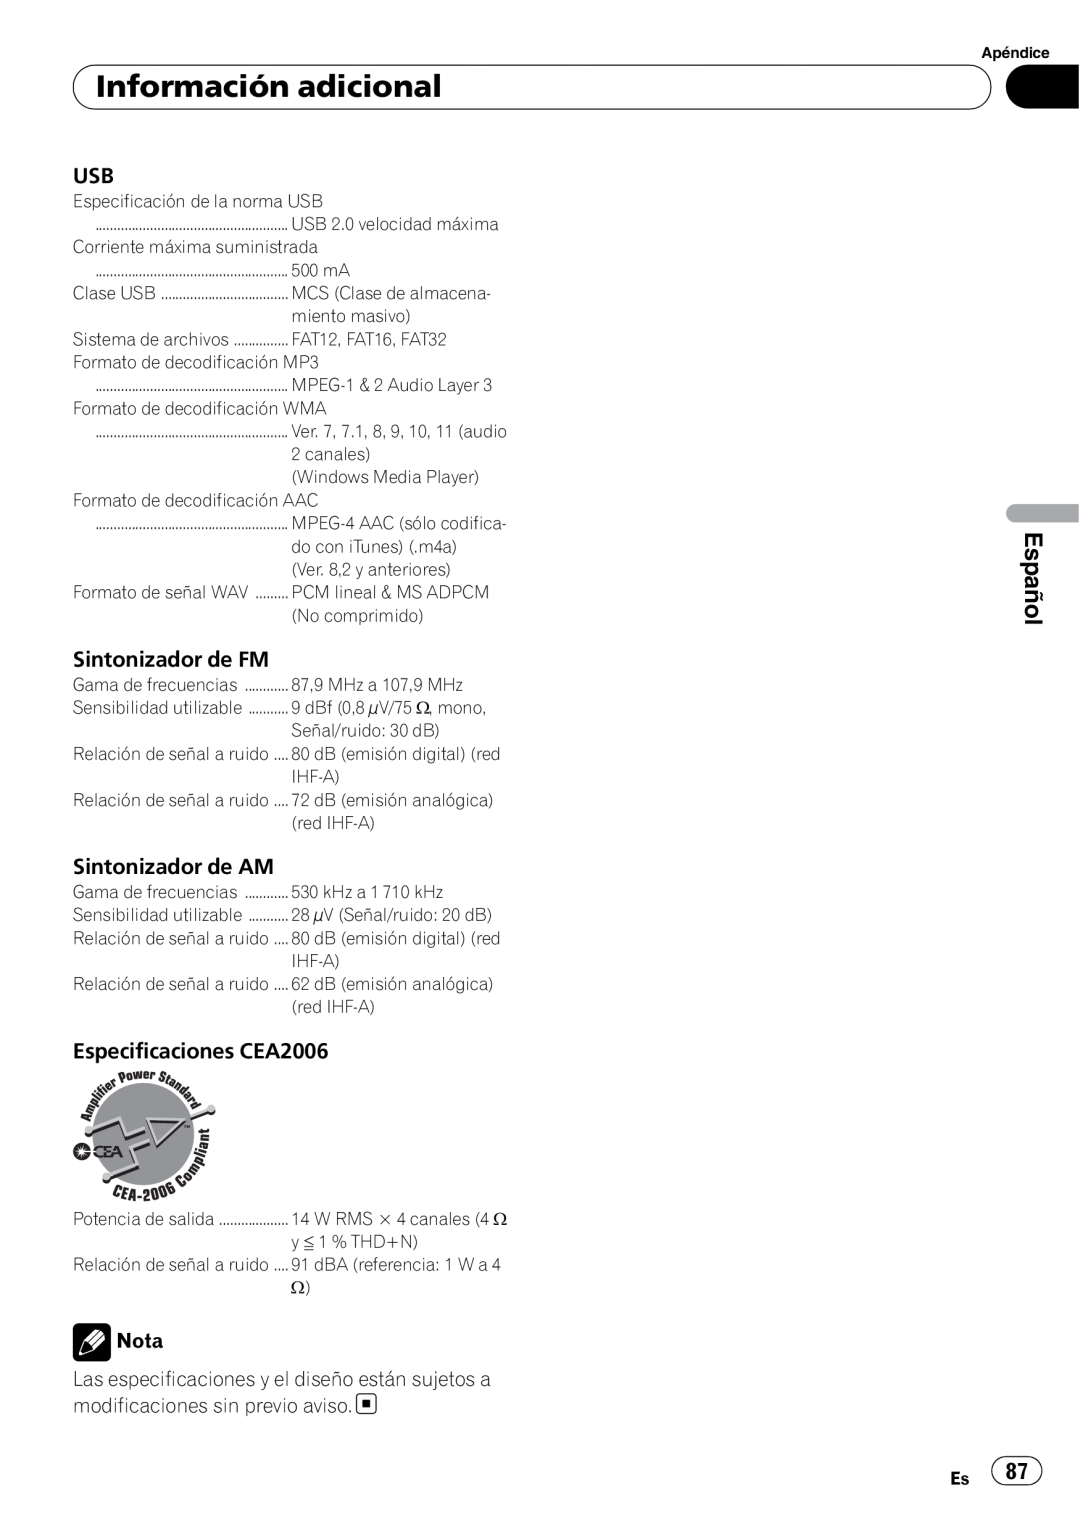 Pioneer DEH-P5200HD Información adicional, Español, Sintonizador de FM, Sintonizador de AM, Especificaciones CEA2006, Nota 